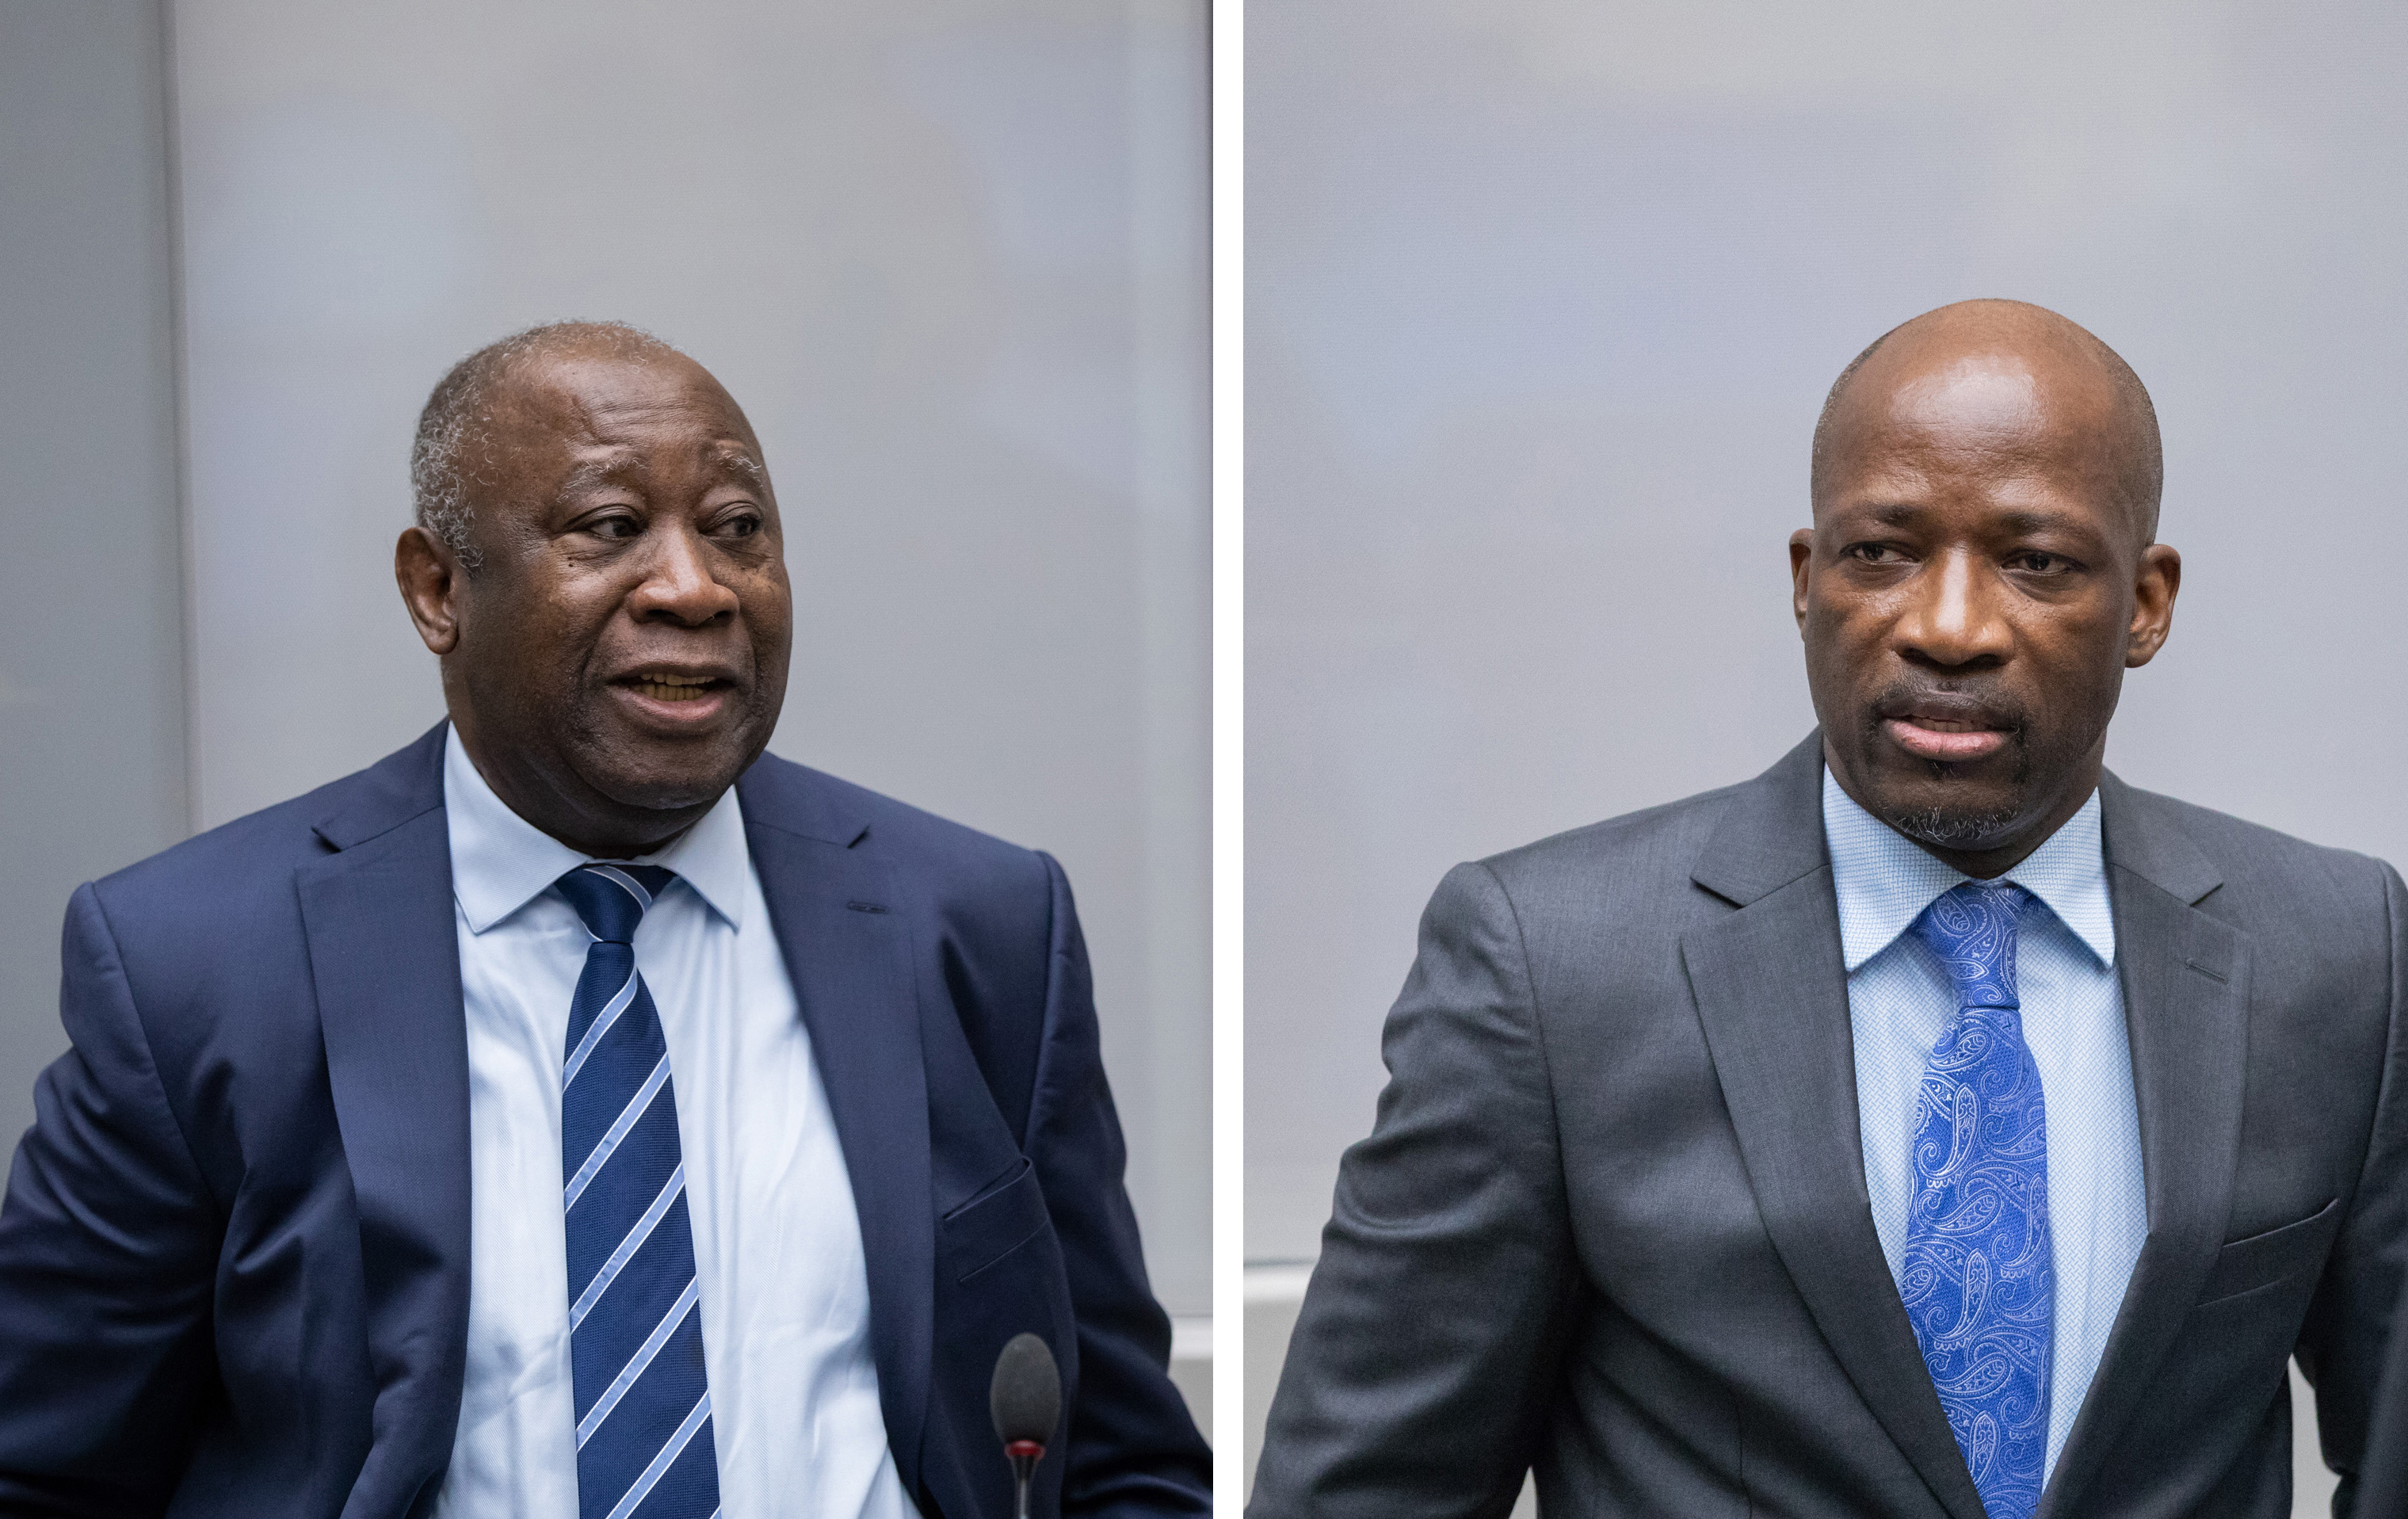 Laurent Gbagbo et Charles Blé Goudé lors de l’audience du 15 janvier 2019 devant la Cour pénale internationale à La Haye, Pays-Bas ©ICC-CPI<br>